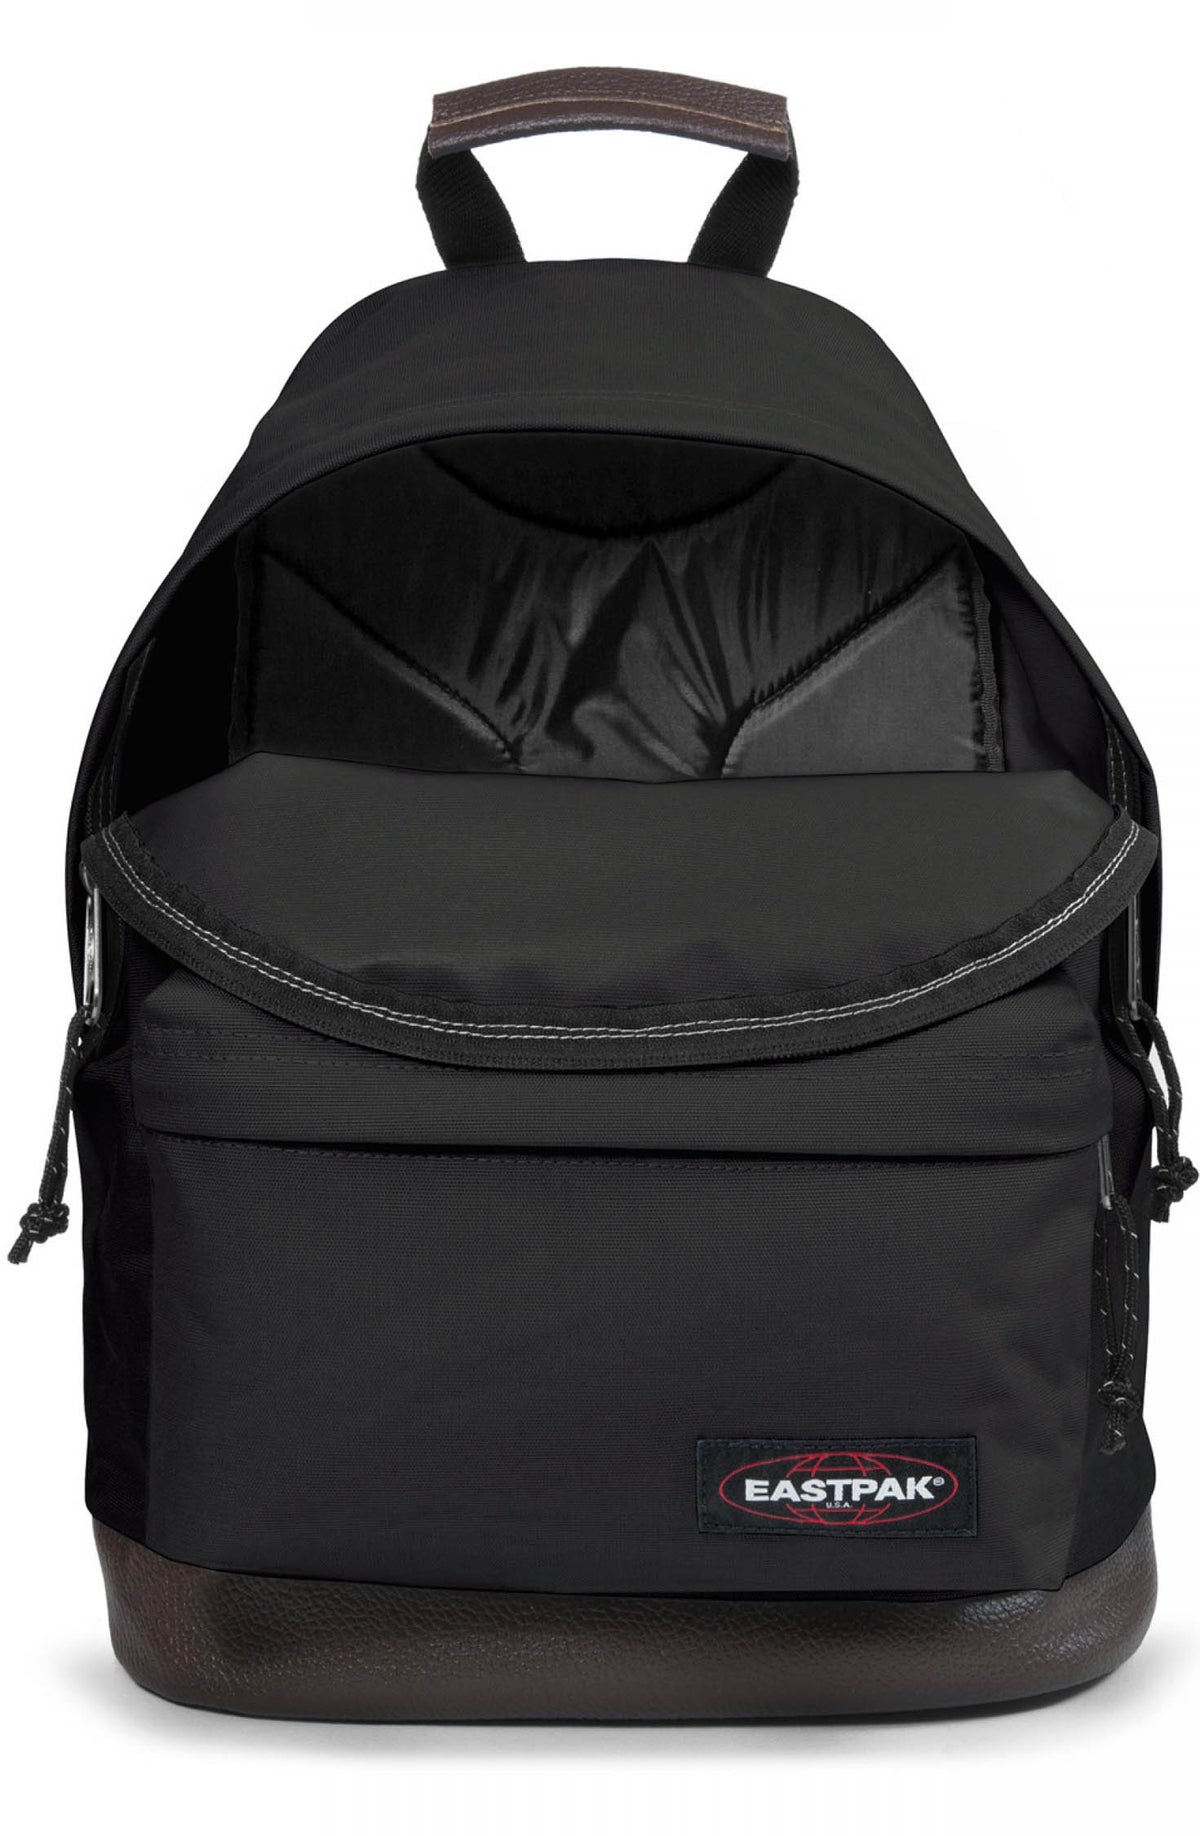 Eastpak Wyoming Backpack - Black